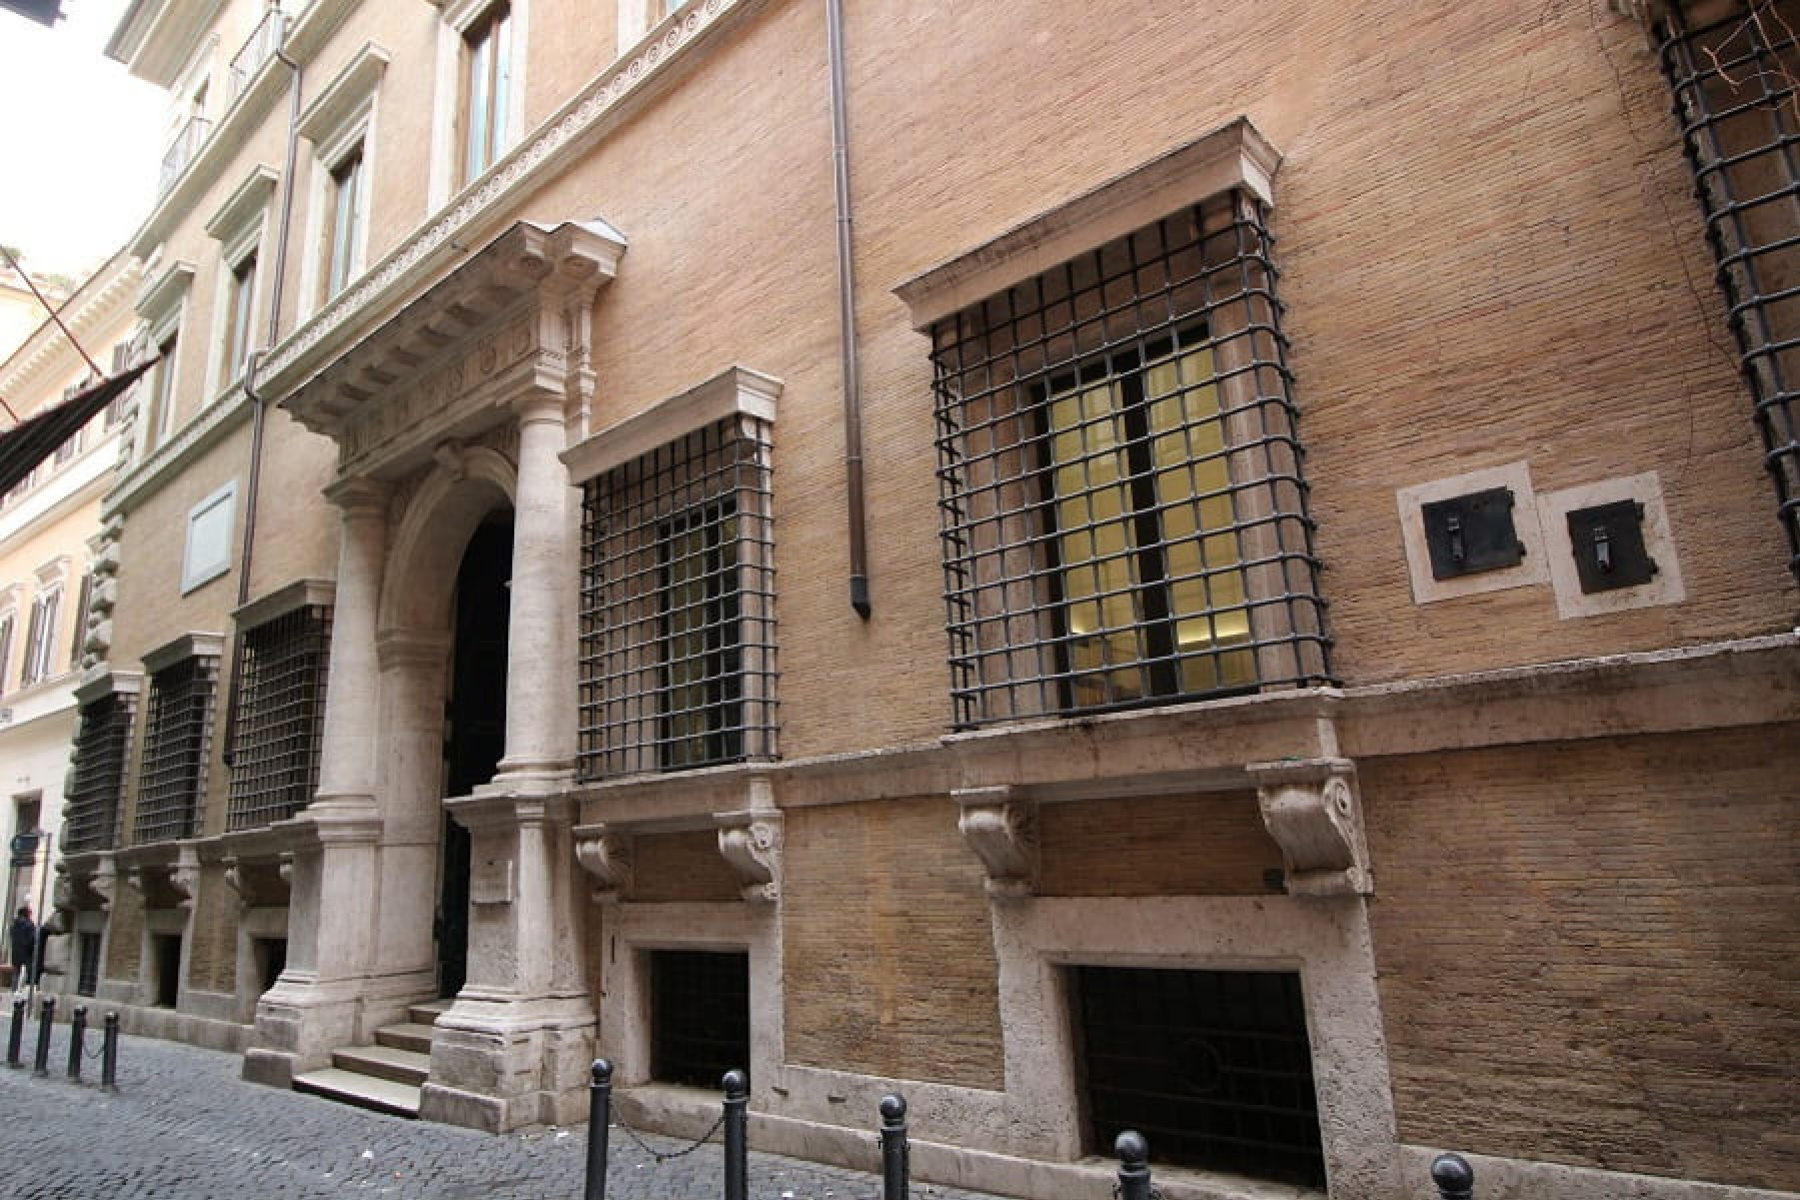 Baldassini Palace - Luigi Sturzo Institute